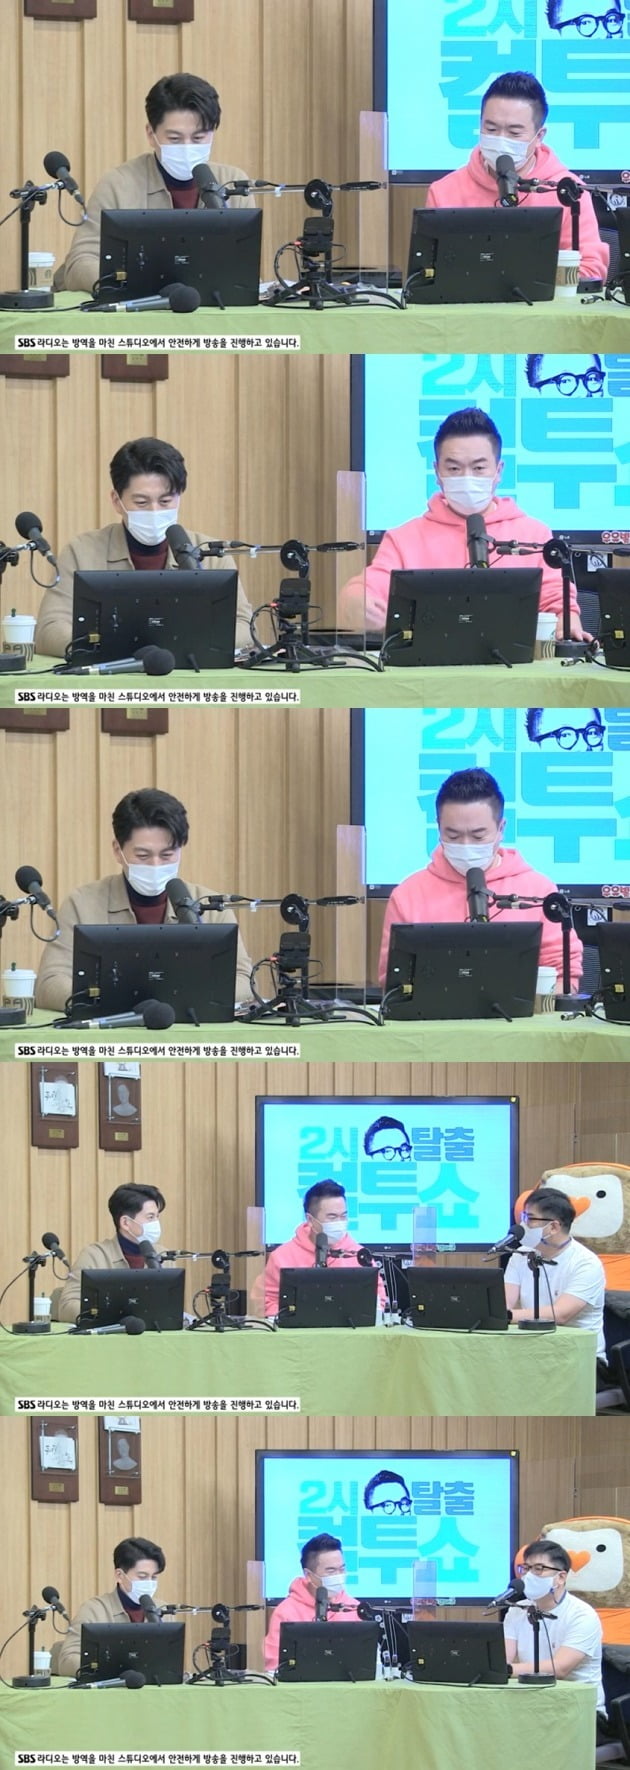 배우 류수영이 '컬투쇼' 스페셜DJ로 함께했다. / 사진=SBS라디오 '컬투쇼' 보는 라디오 캡처